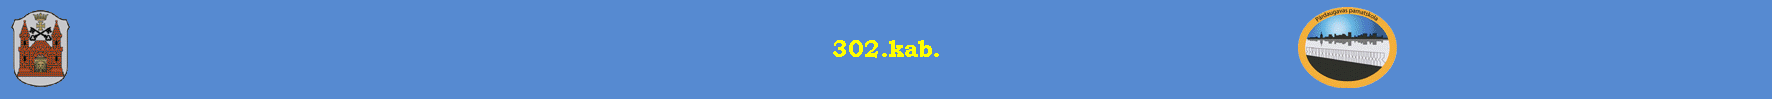 302.kab.